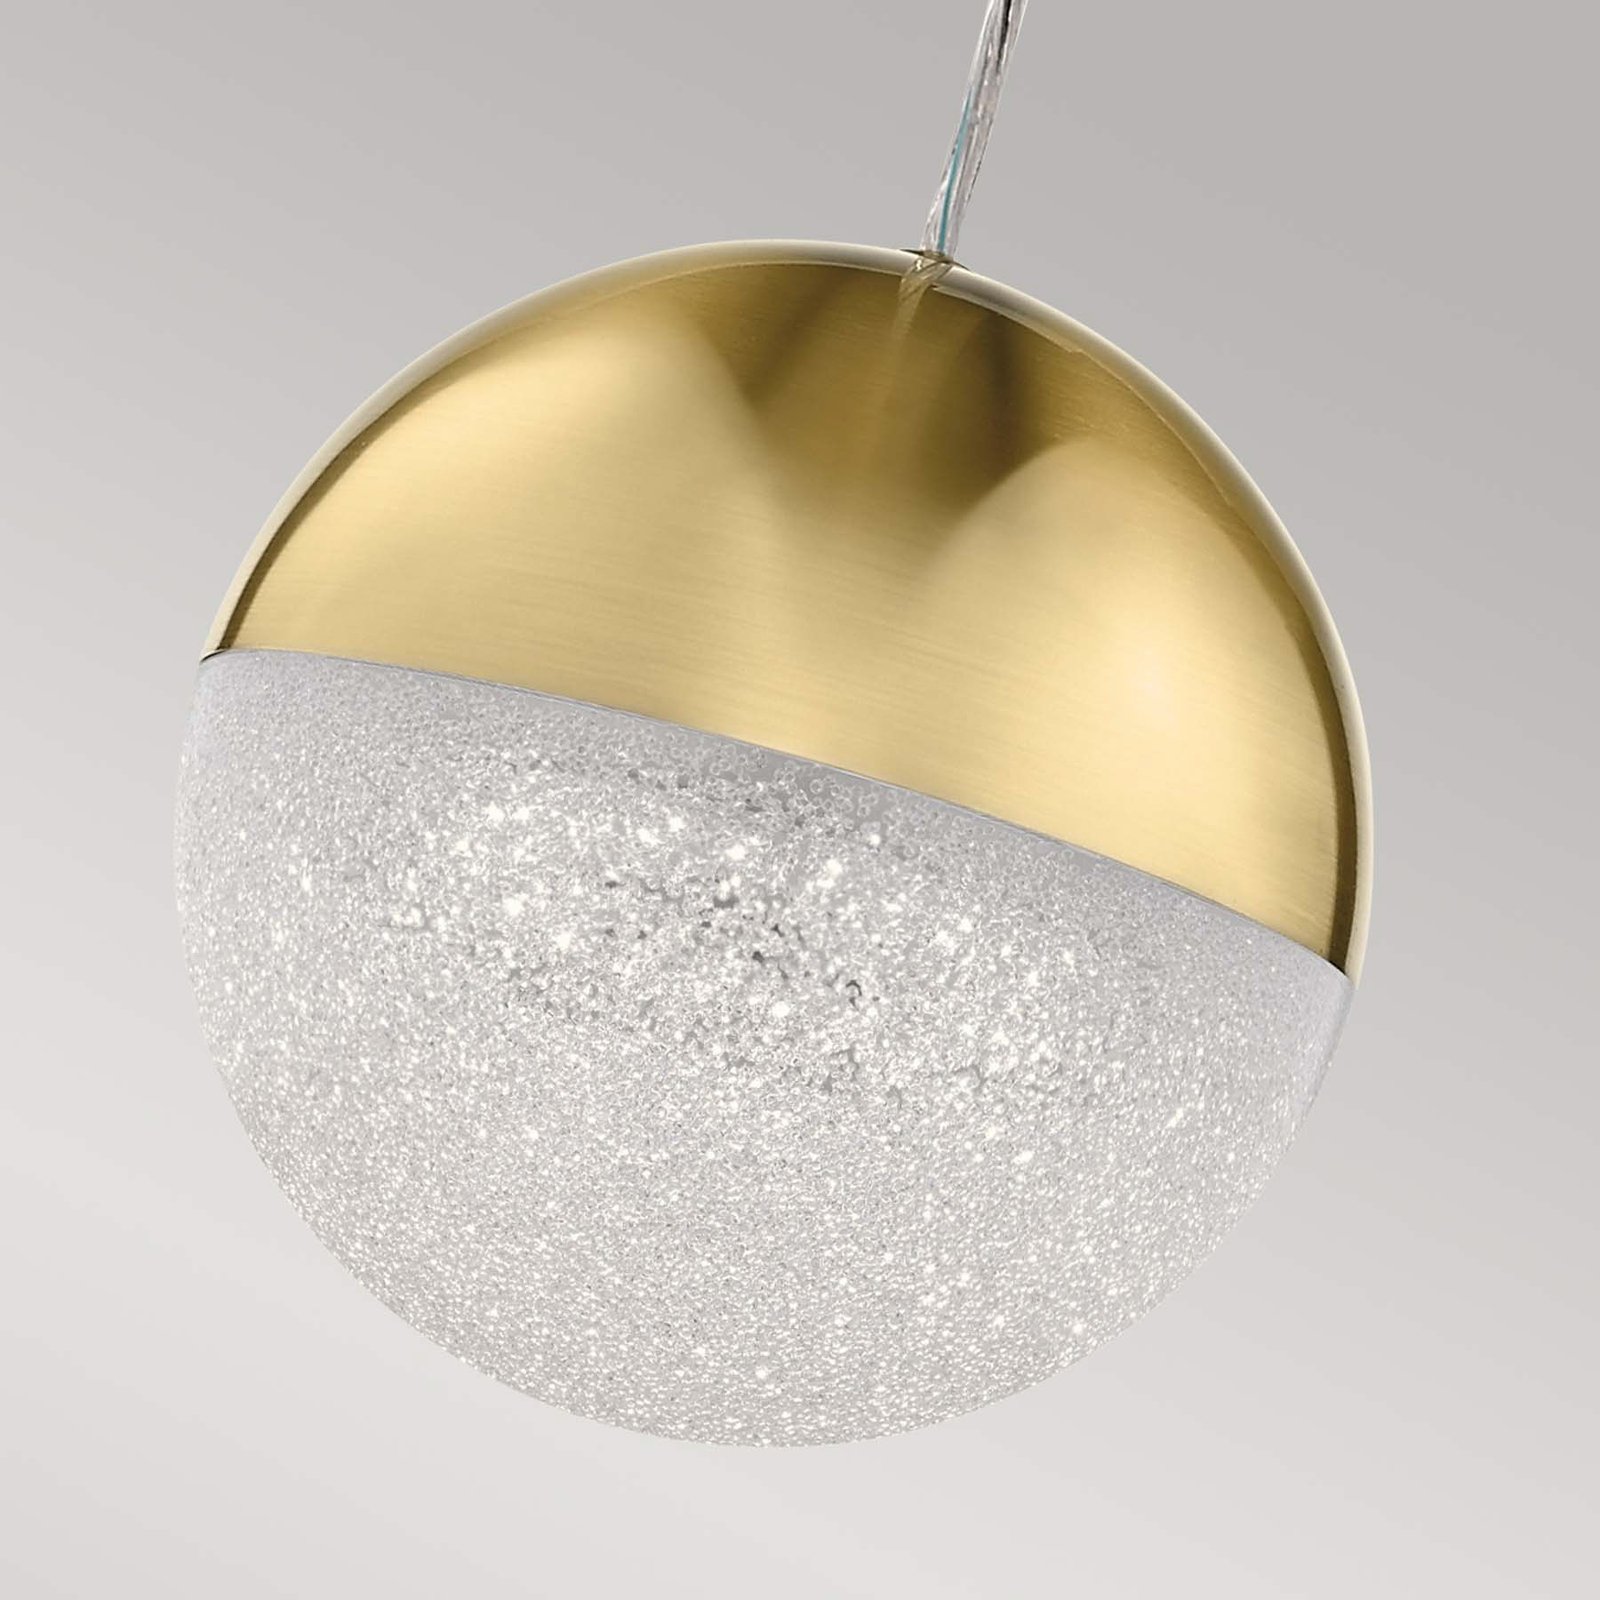 Holdfény LED-es függőlámpa, arany színű, alumínium, Ø 20 cm, gömb alakú